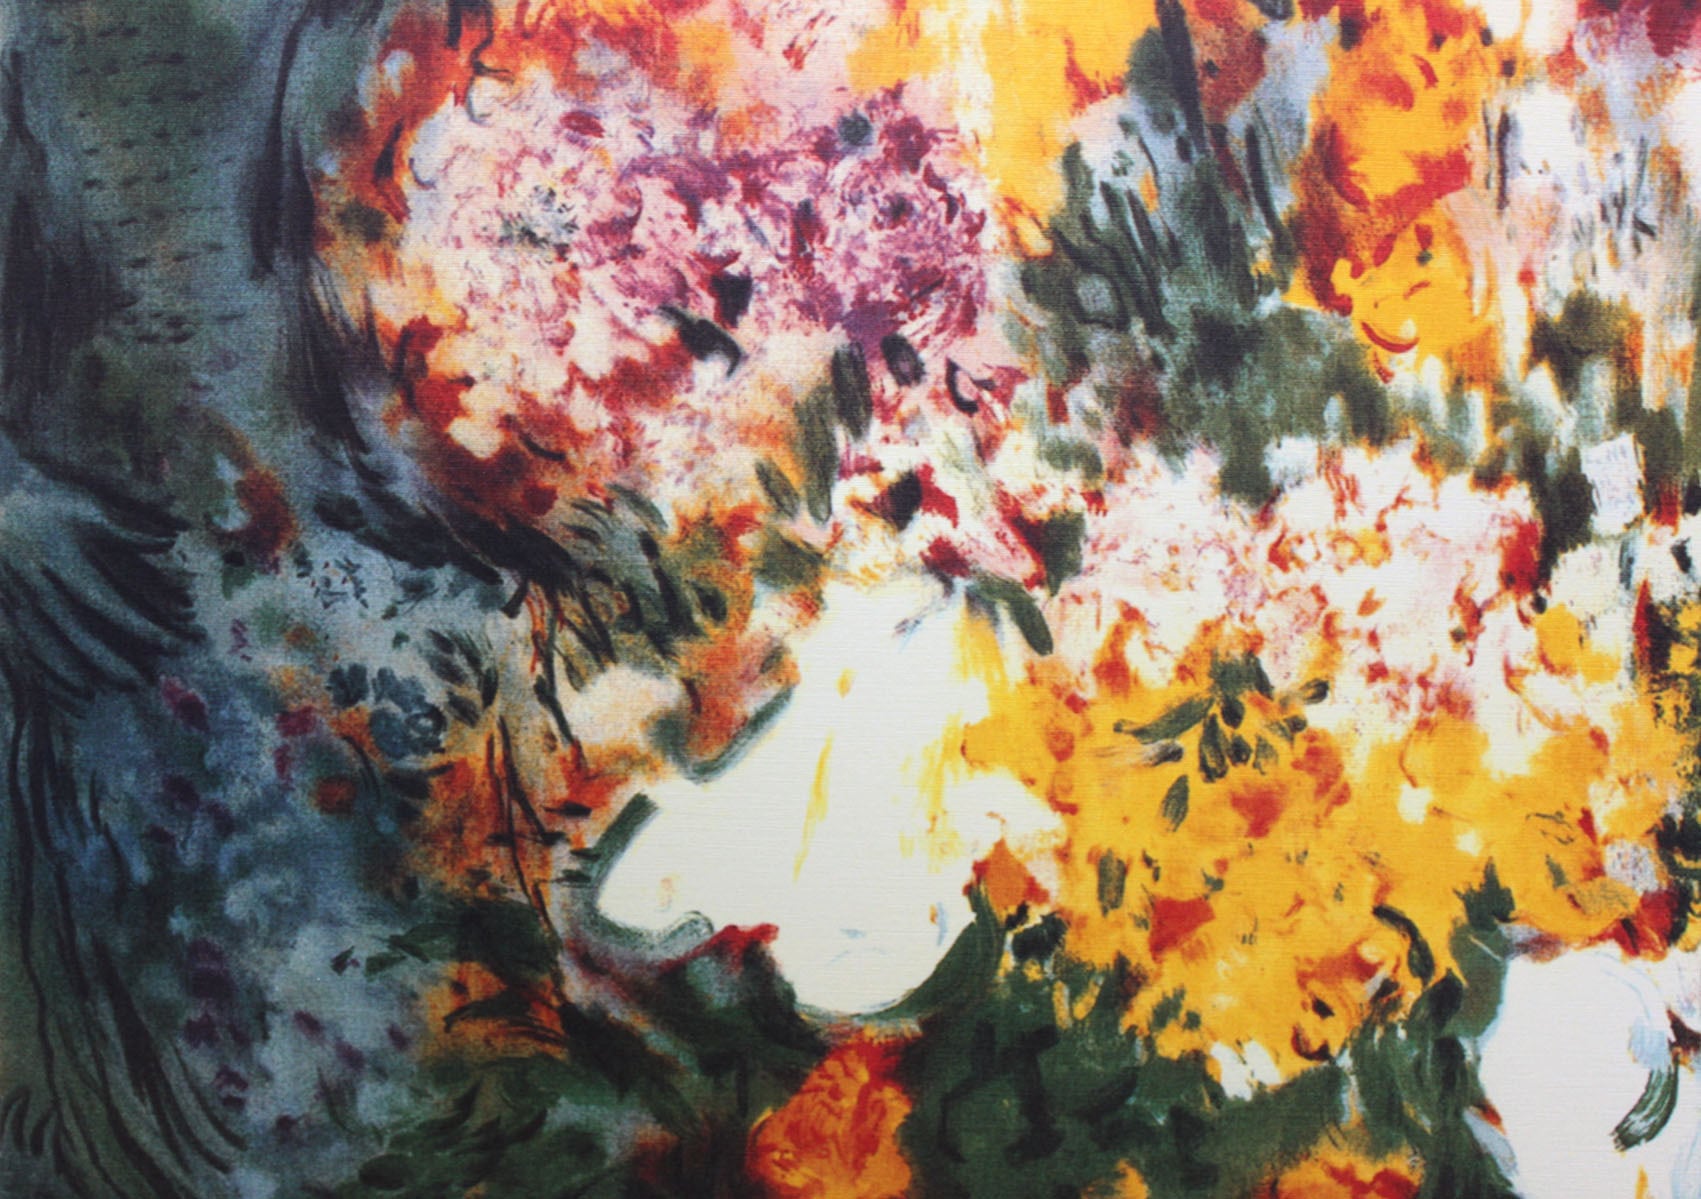 マルク・シャガール作品「花束」作品証明書・展示用フック・限定500部エディション付複製画リトグラ